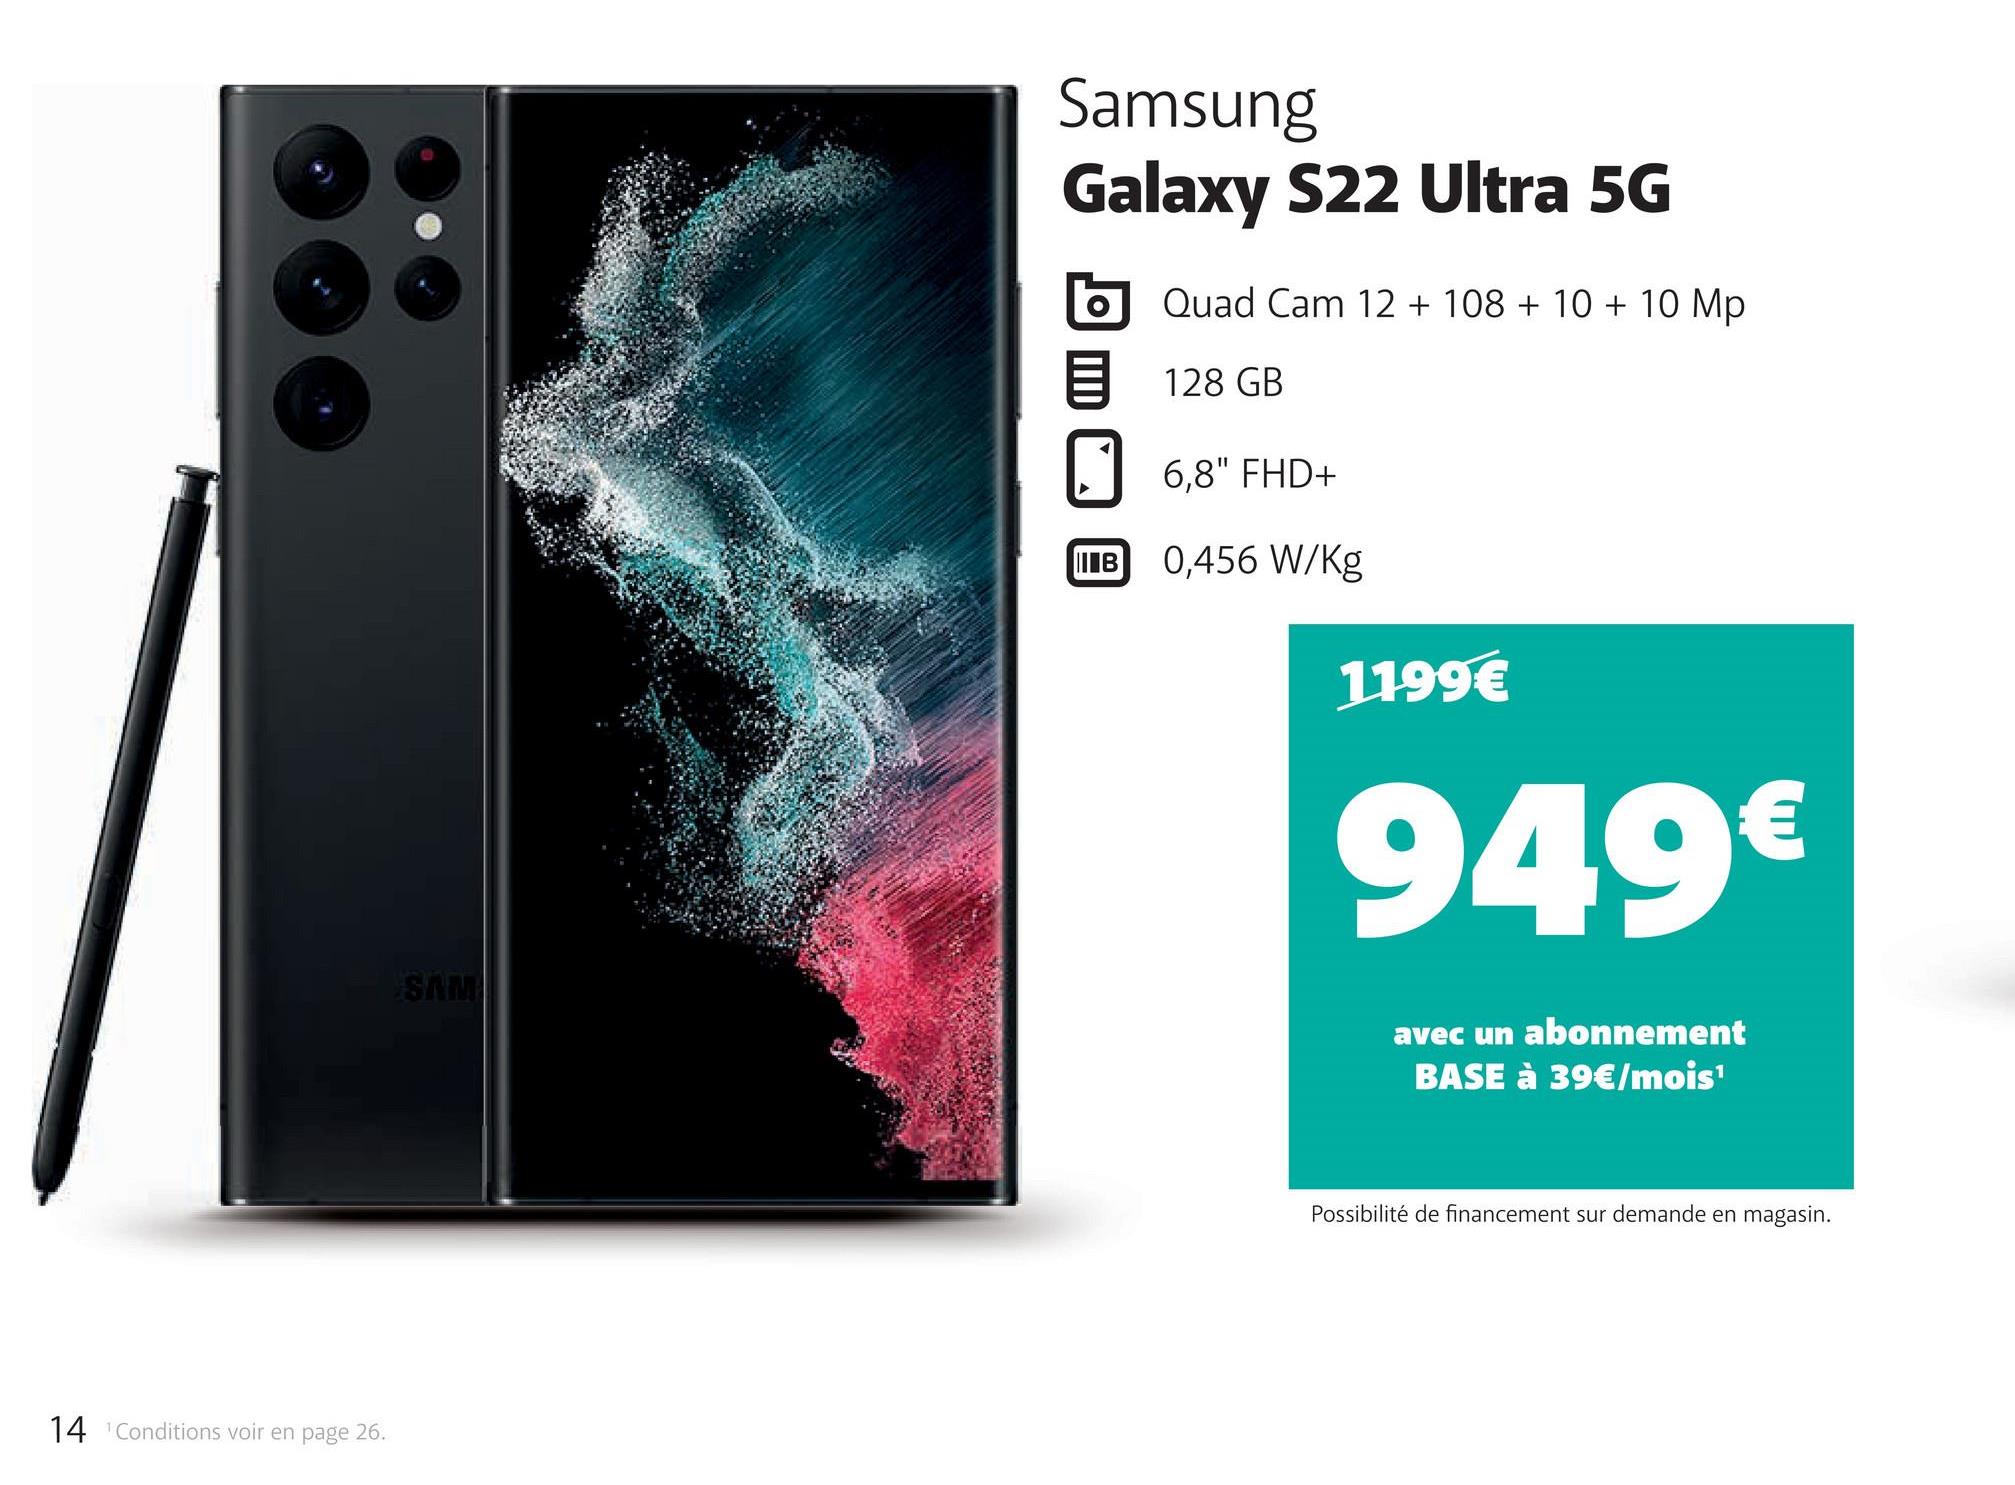 14 Conditions voir en page 26.
SAM
Samsung
Galaxy S22 Ultra 5G
Quad Cam 12 + 108 + 10 + 10 Mp
128 GB
6,8" FHD+
B 0,456 W/Kg
1199€
949€
avec un abonnement
BASE à 39€/mois¹
Possibilité de financement sur demande en magasin.